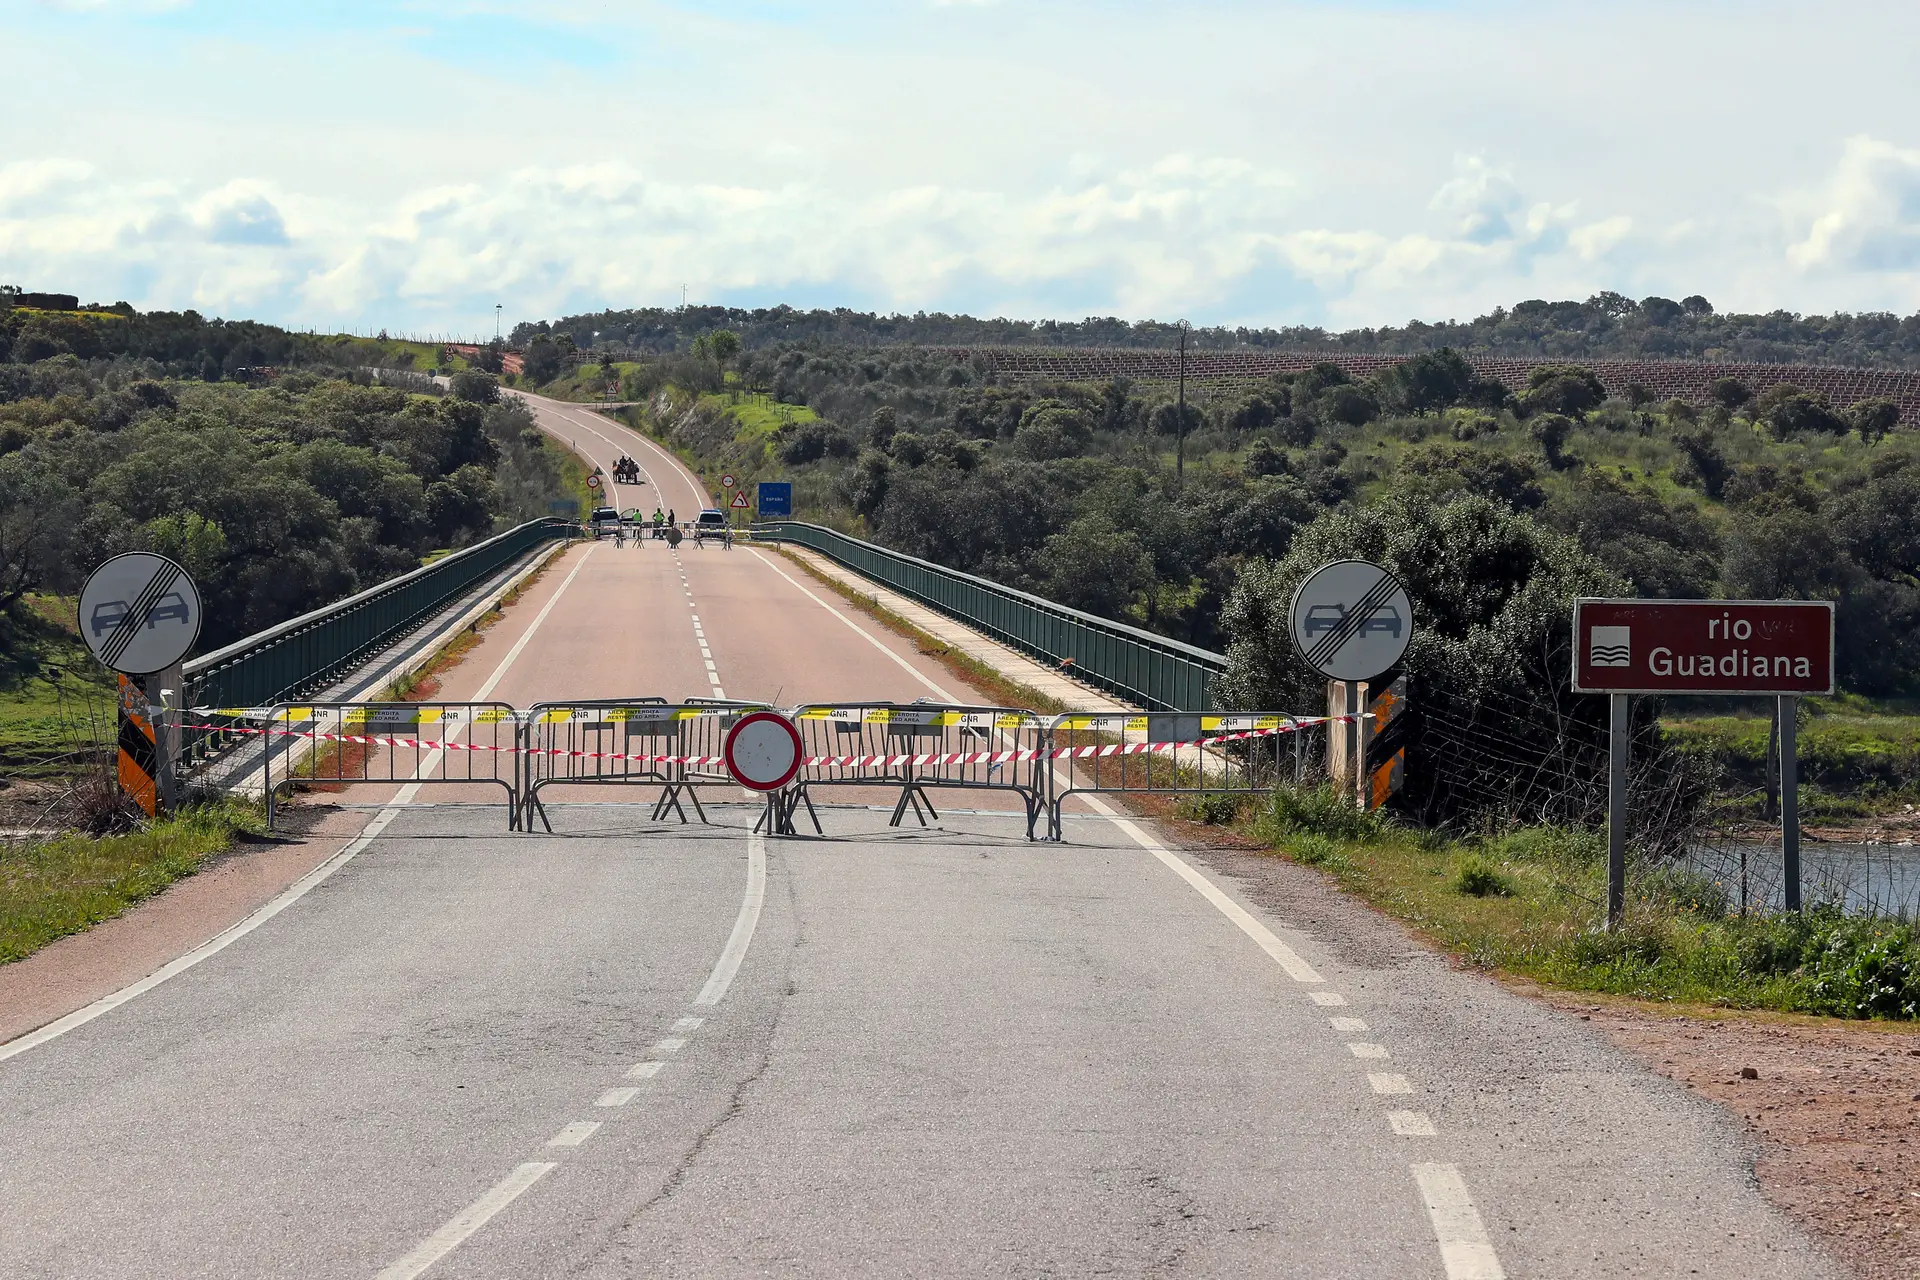 Espanha exige teste à covid-19 a portugueses que entrem por via terrestre